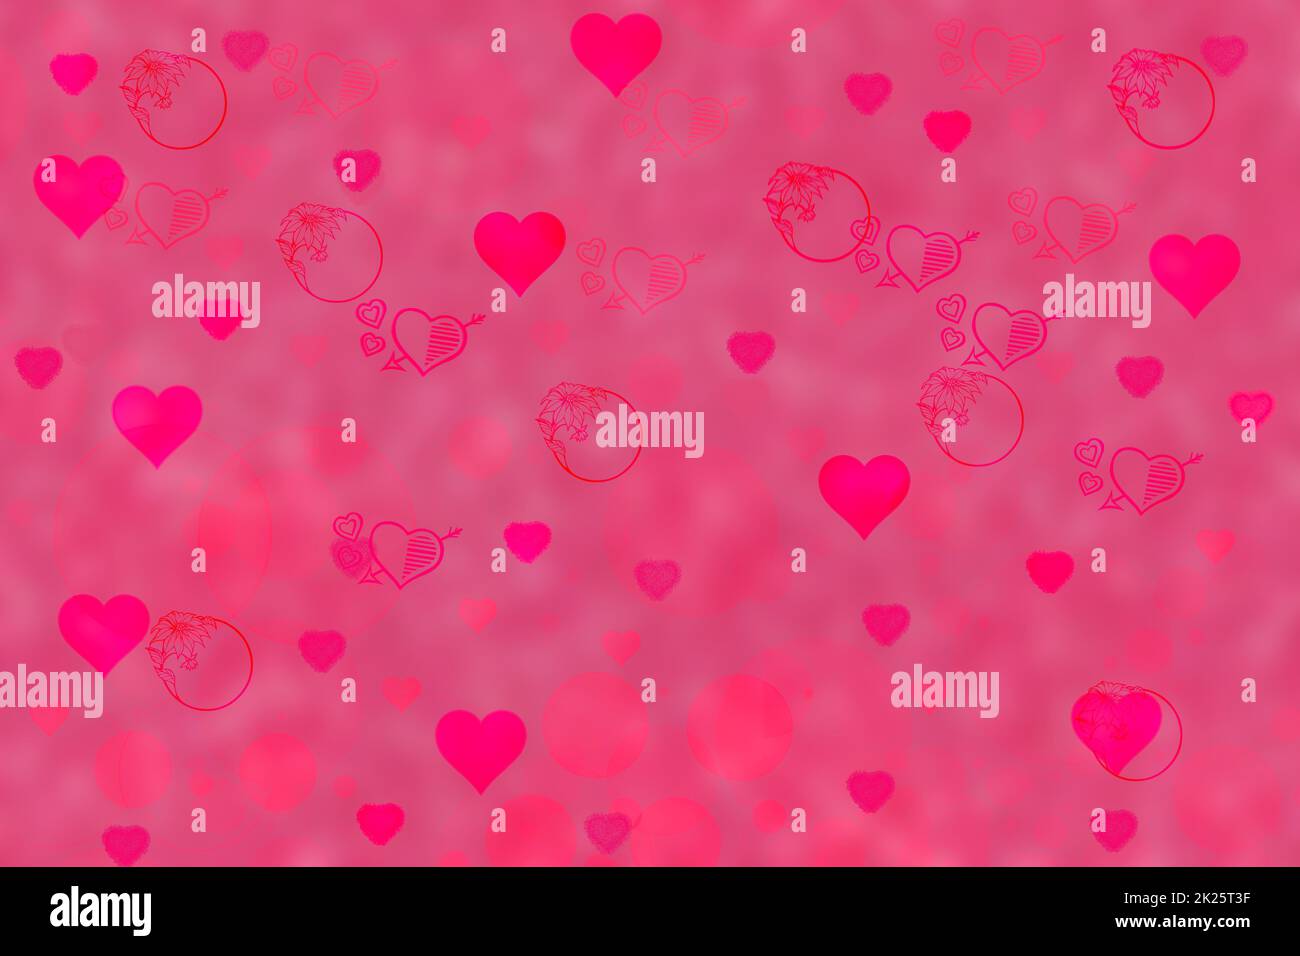 Abstrait festif rouge flou rose magenta fond avec coeur rose clair amour bokeh pour la carte de mariage ou le jour de la Saint-Valentin. Décor texturé romantique avec espace pour votre design. Concept de carte. Banque D'Images